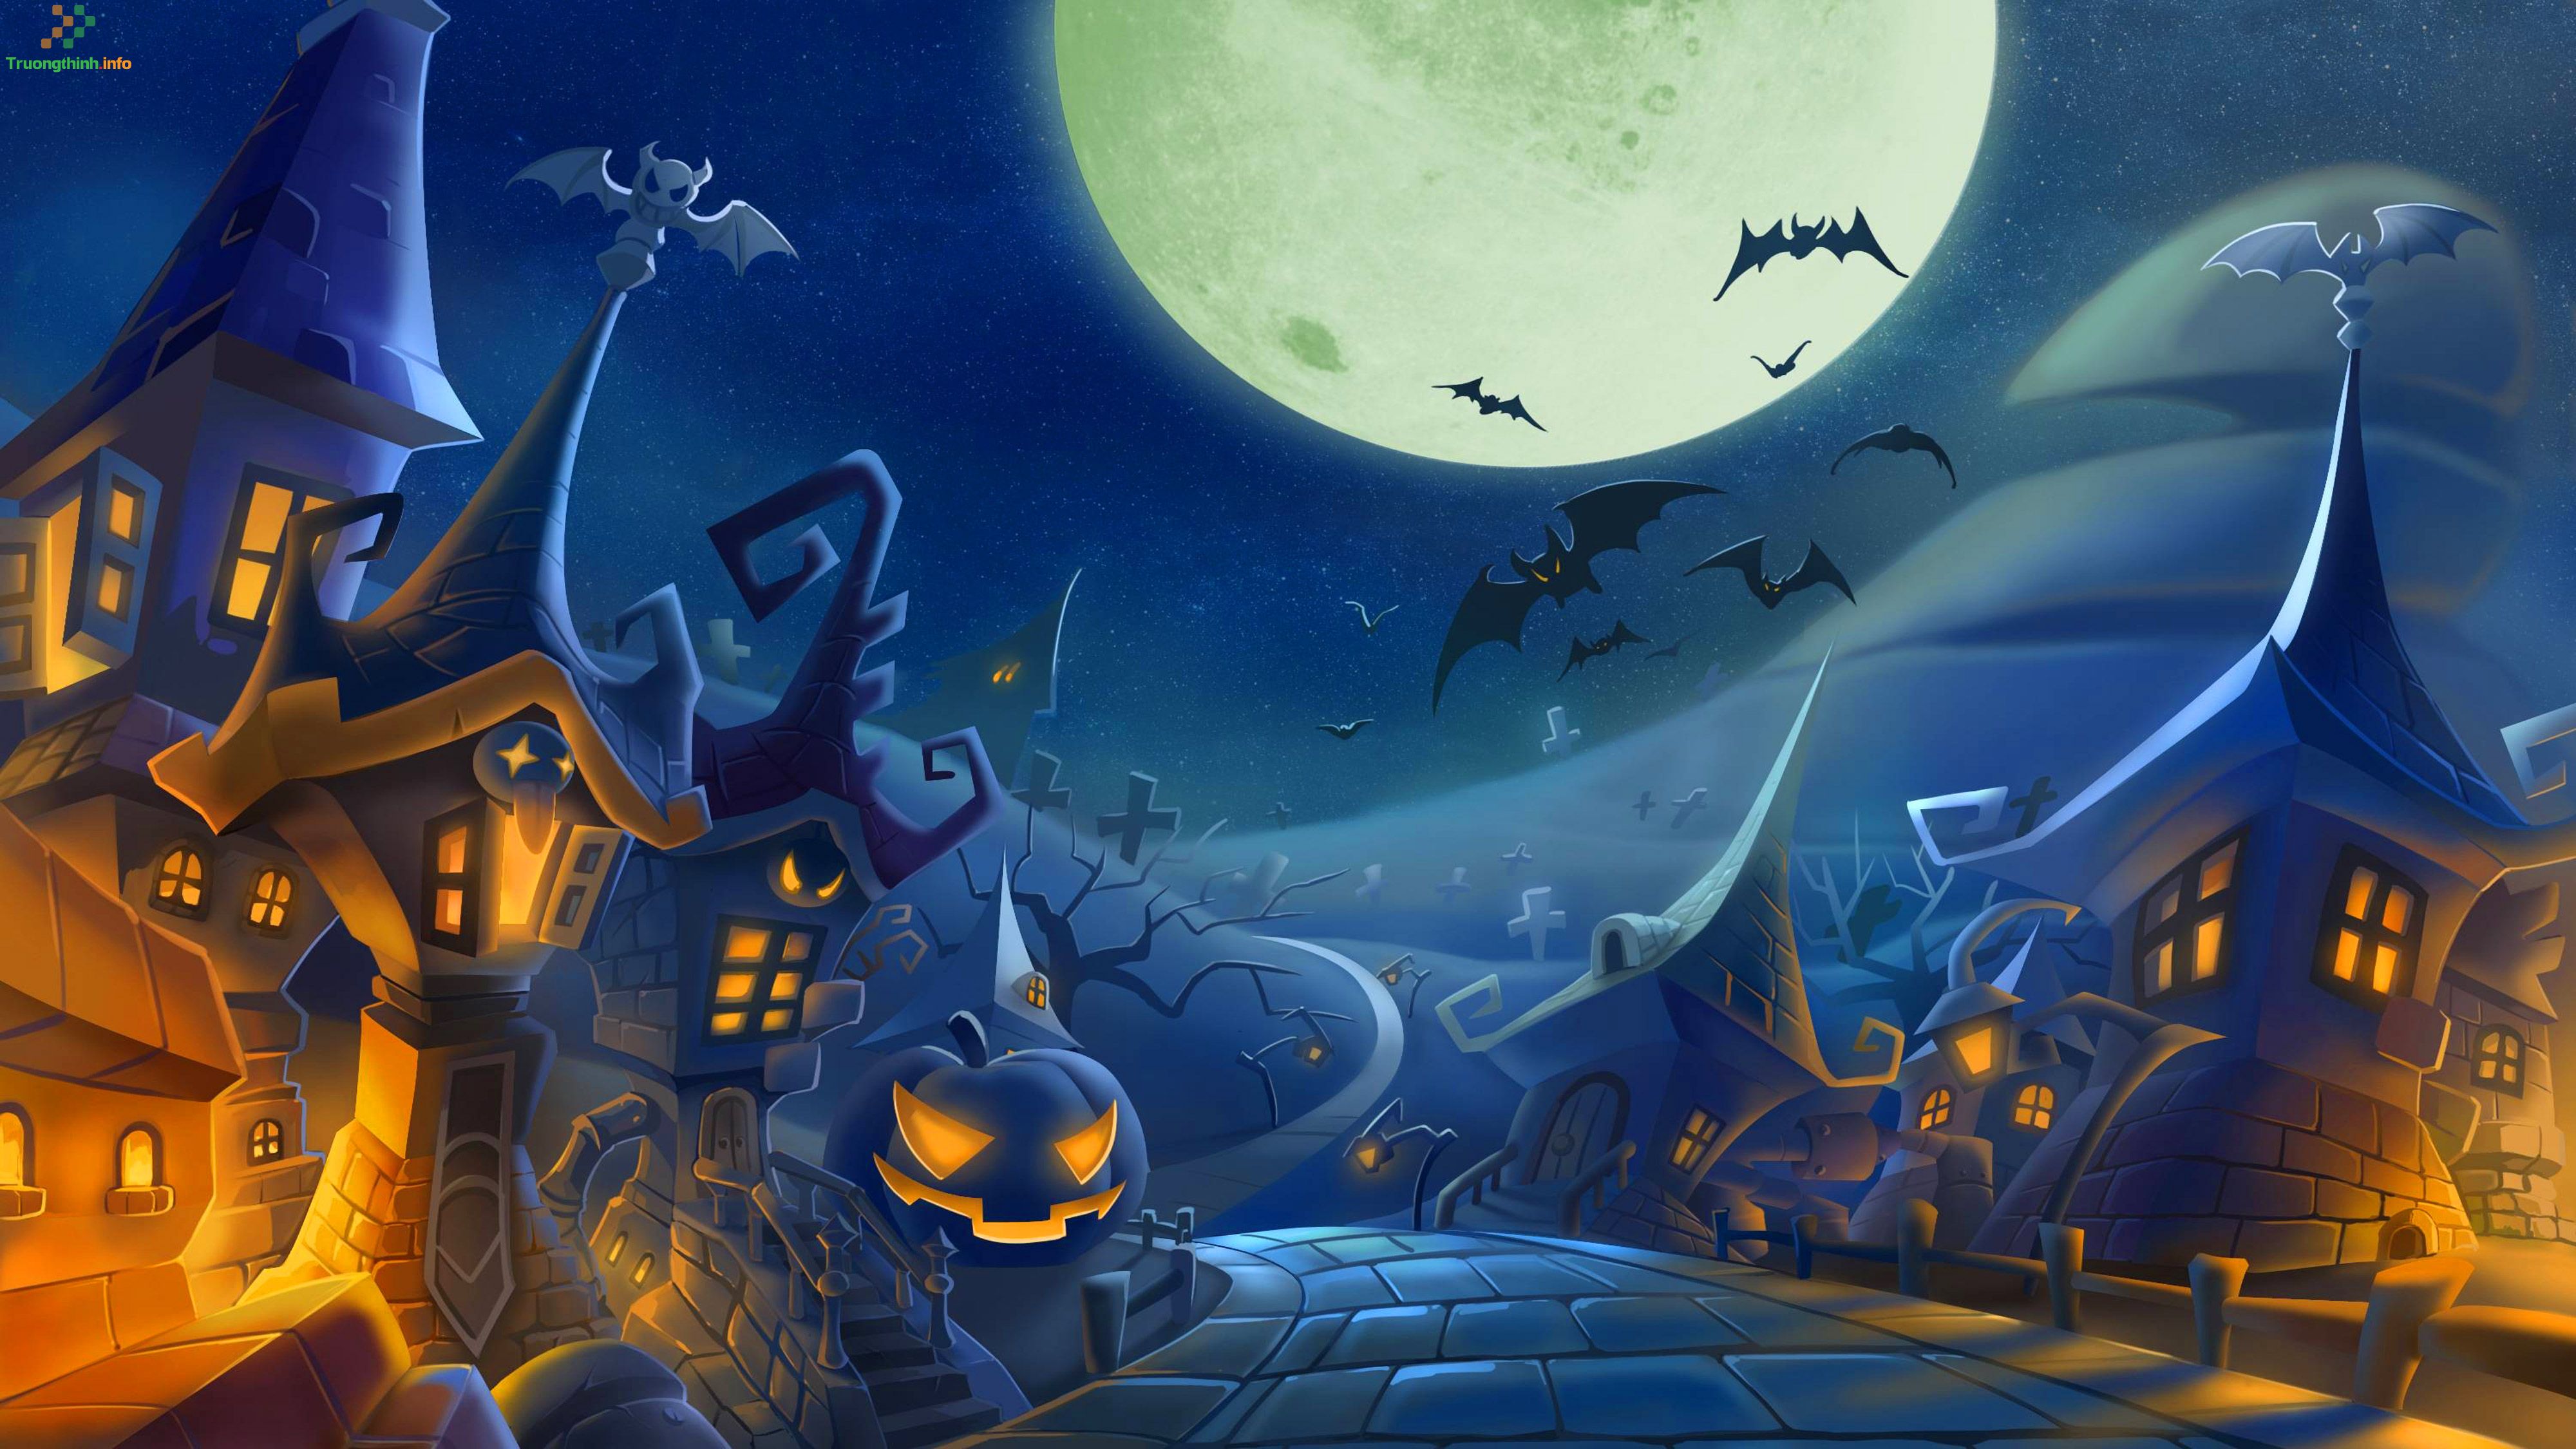 Hãy đến với chúng tôi để khám phá cách vẽ tranh Halloween đơn giản nhất! Các kỹ thuật vẽ đơn giản và dễ hiểu sẽ giúp bạn tạo ra những bức tranh kinh dị và đáng sợ nhất. Đón đợi mùa Halloween thật sáng tạo với những bức tranh chất lượng nhất từ chúng tôi!